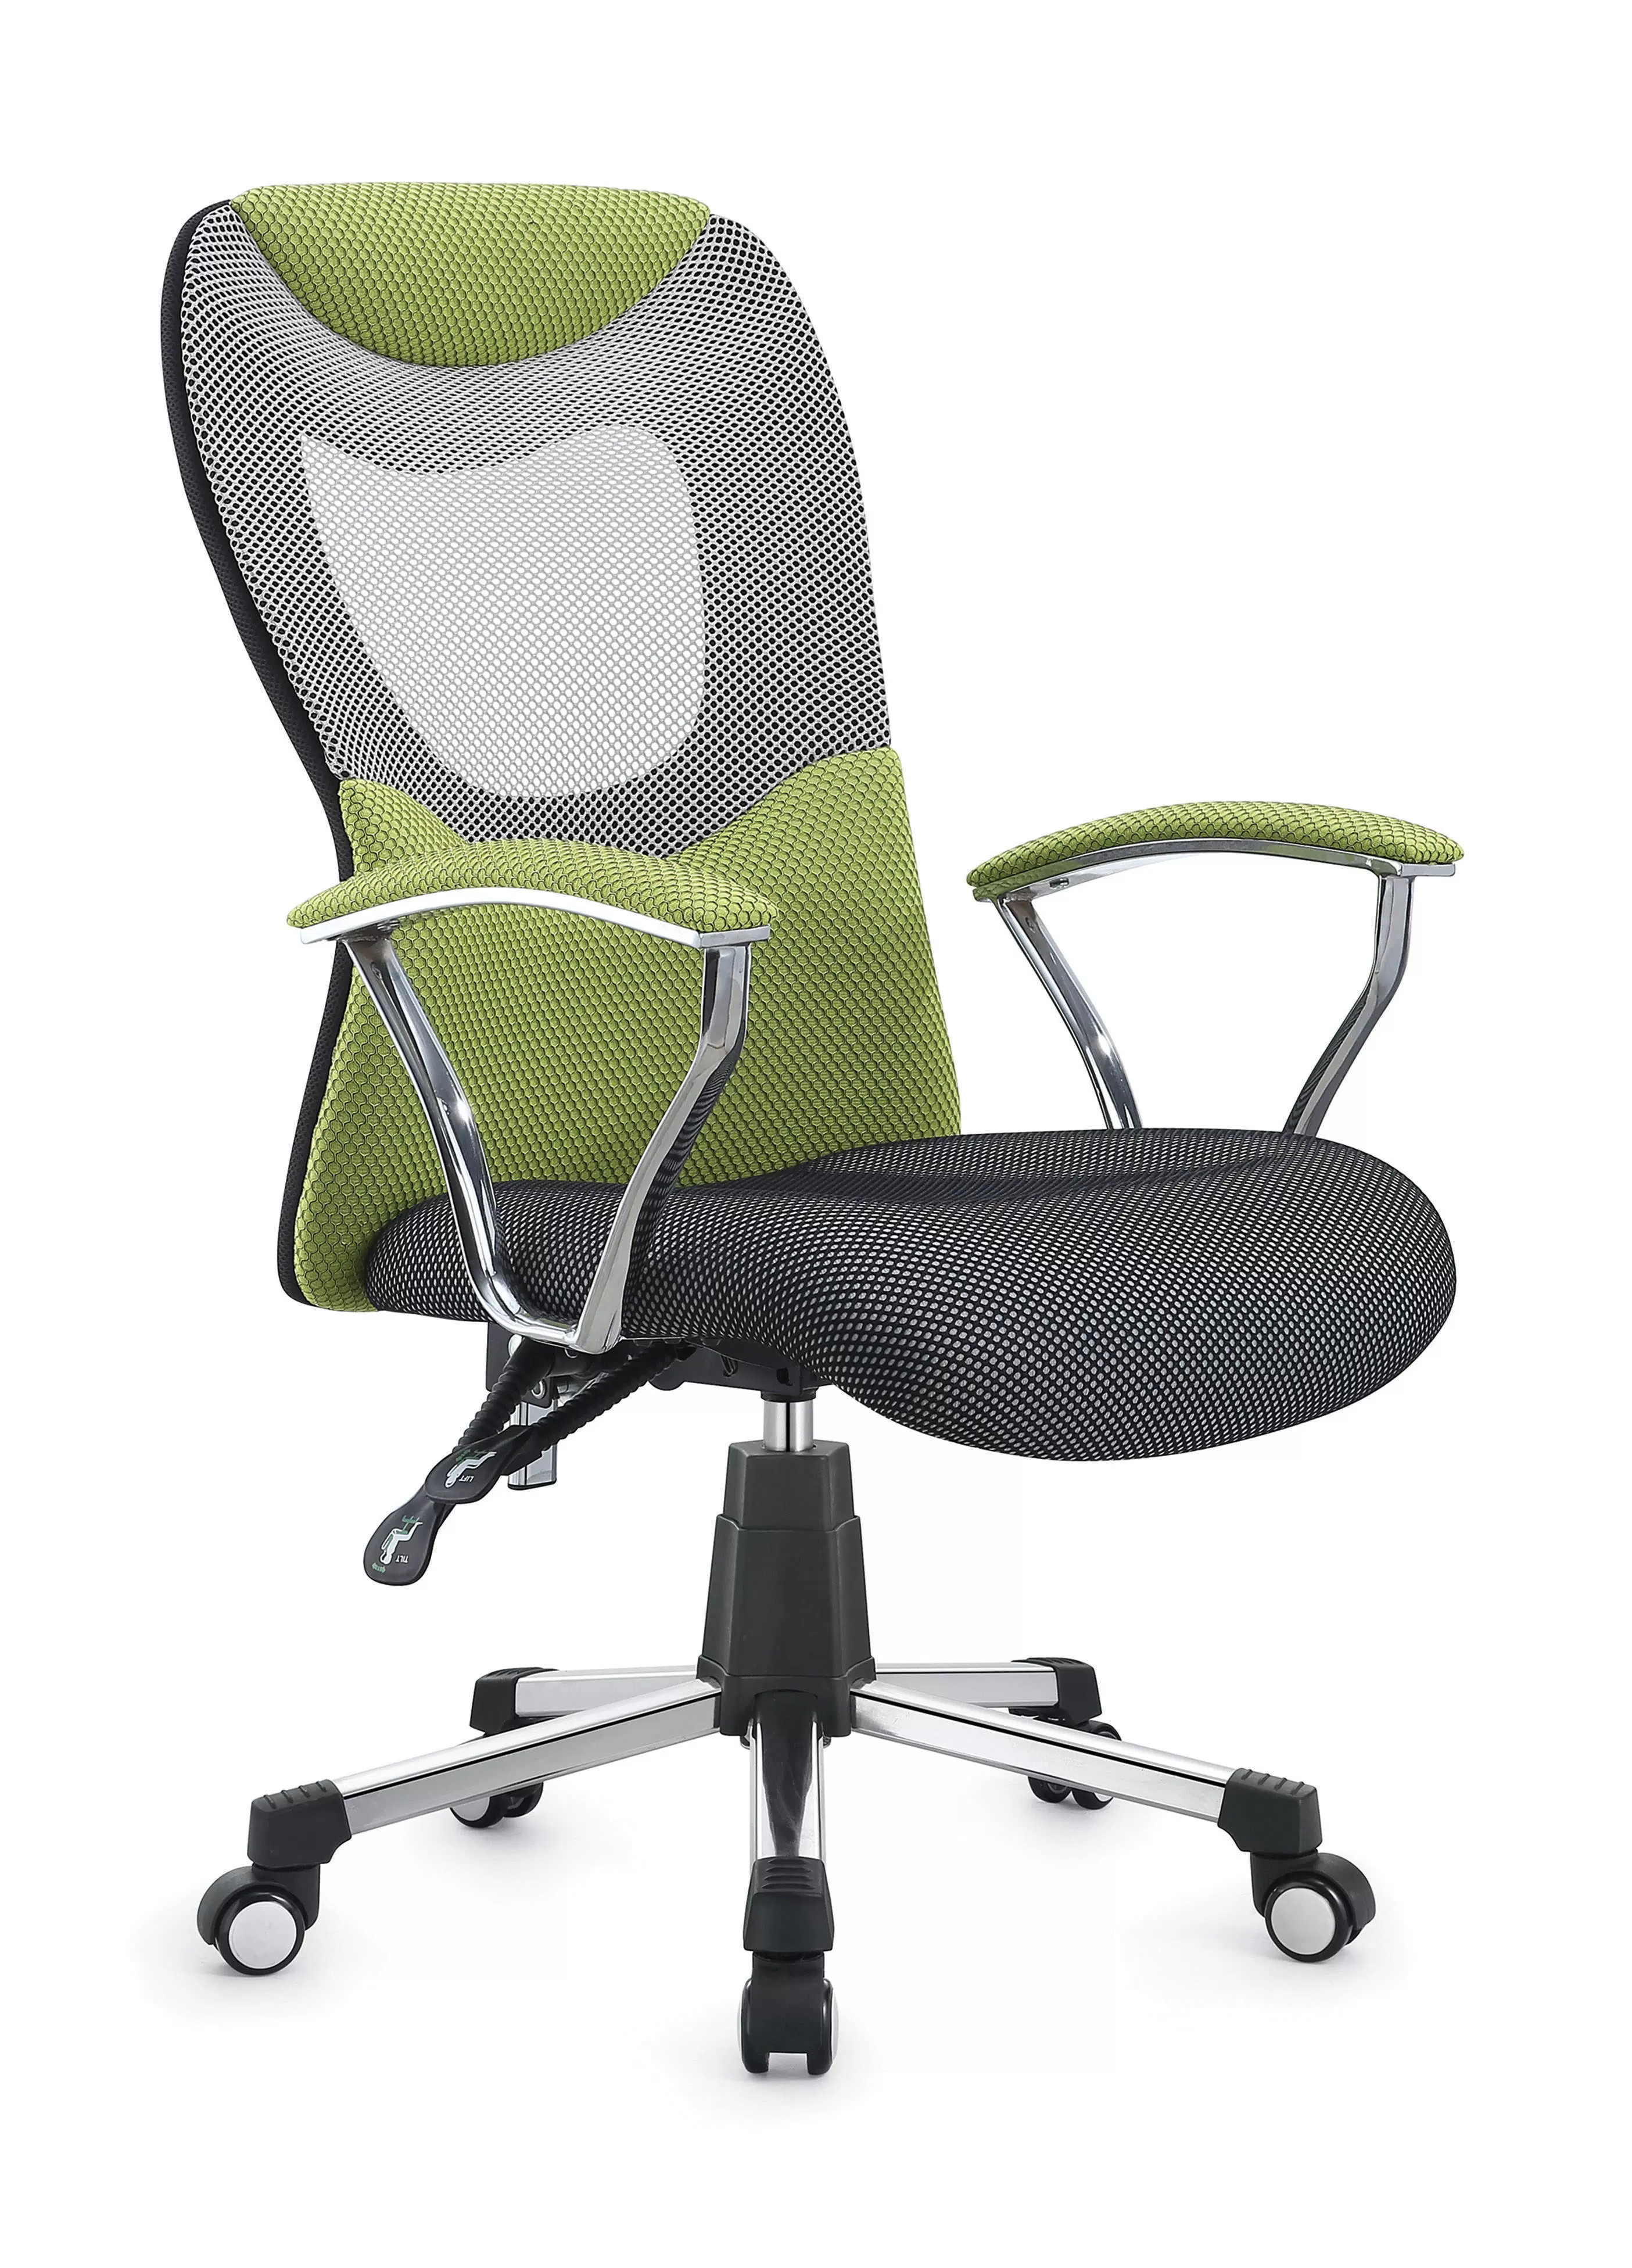 办公椅中国大陆电脑椅椅子人体工学时尚C072老板椅可躺左右转包邮-Taobao